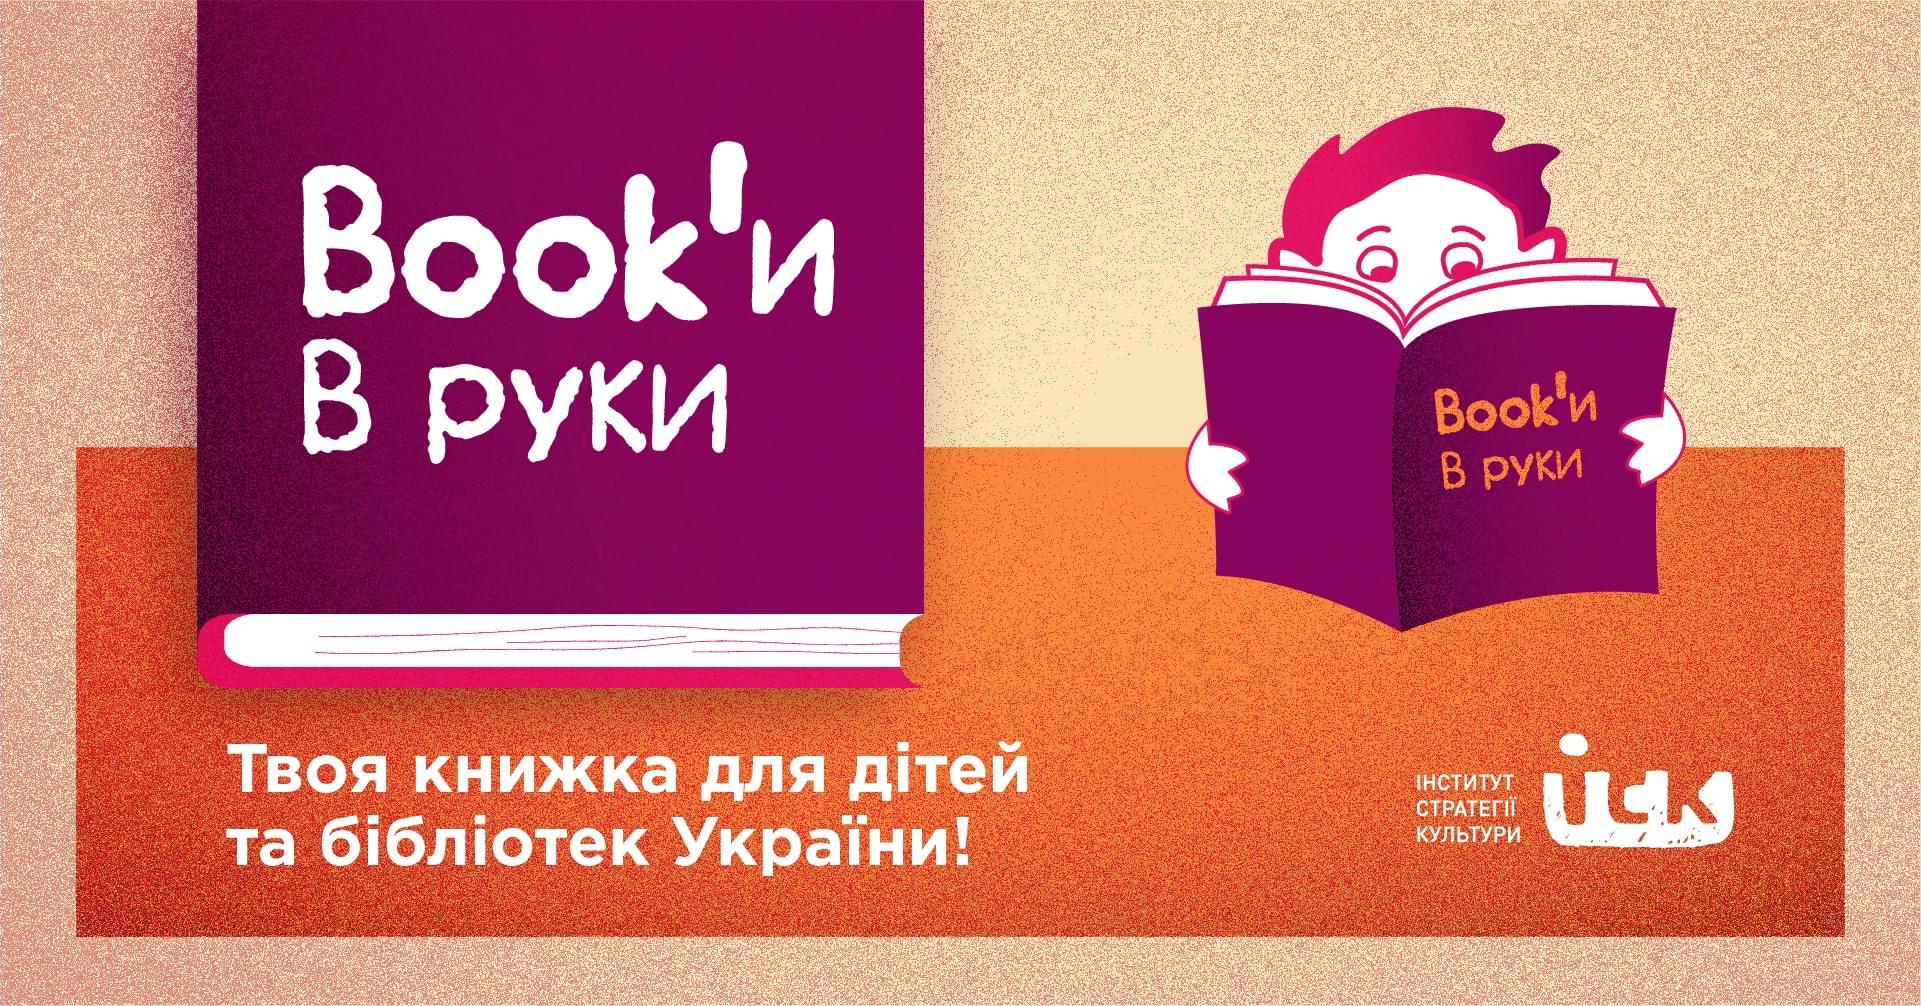 Врятувати бібліотеки України: що робити та як допомогти?